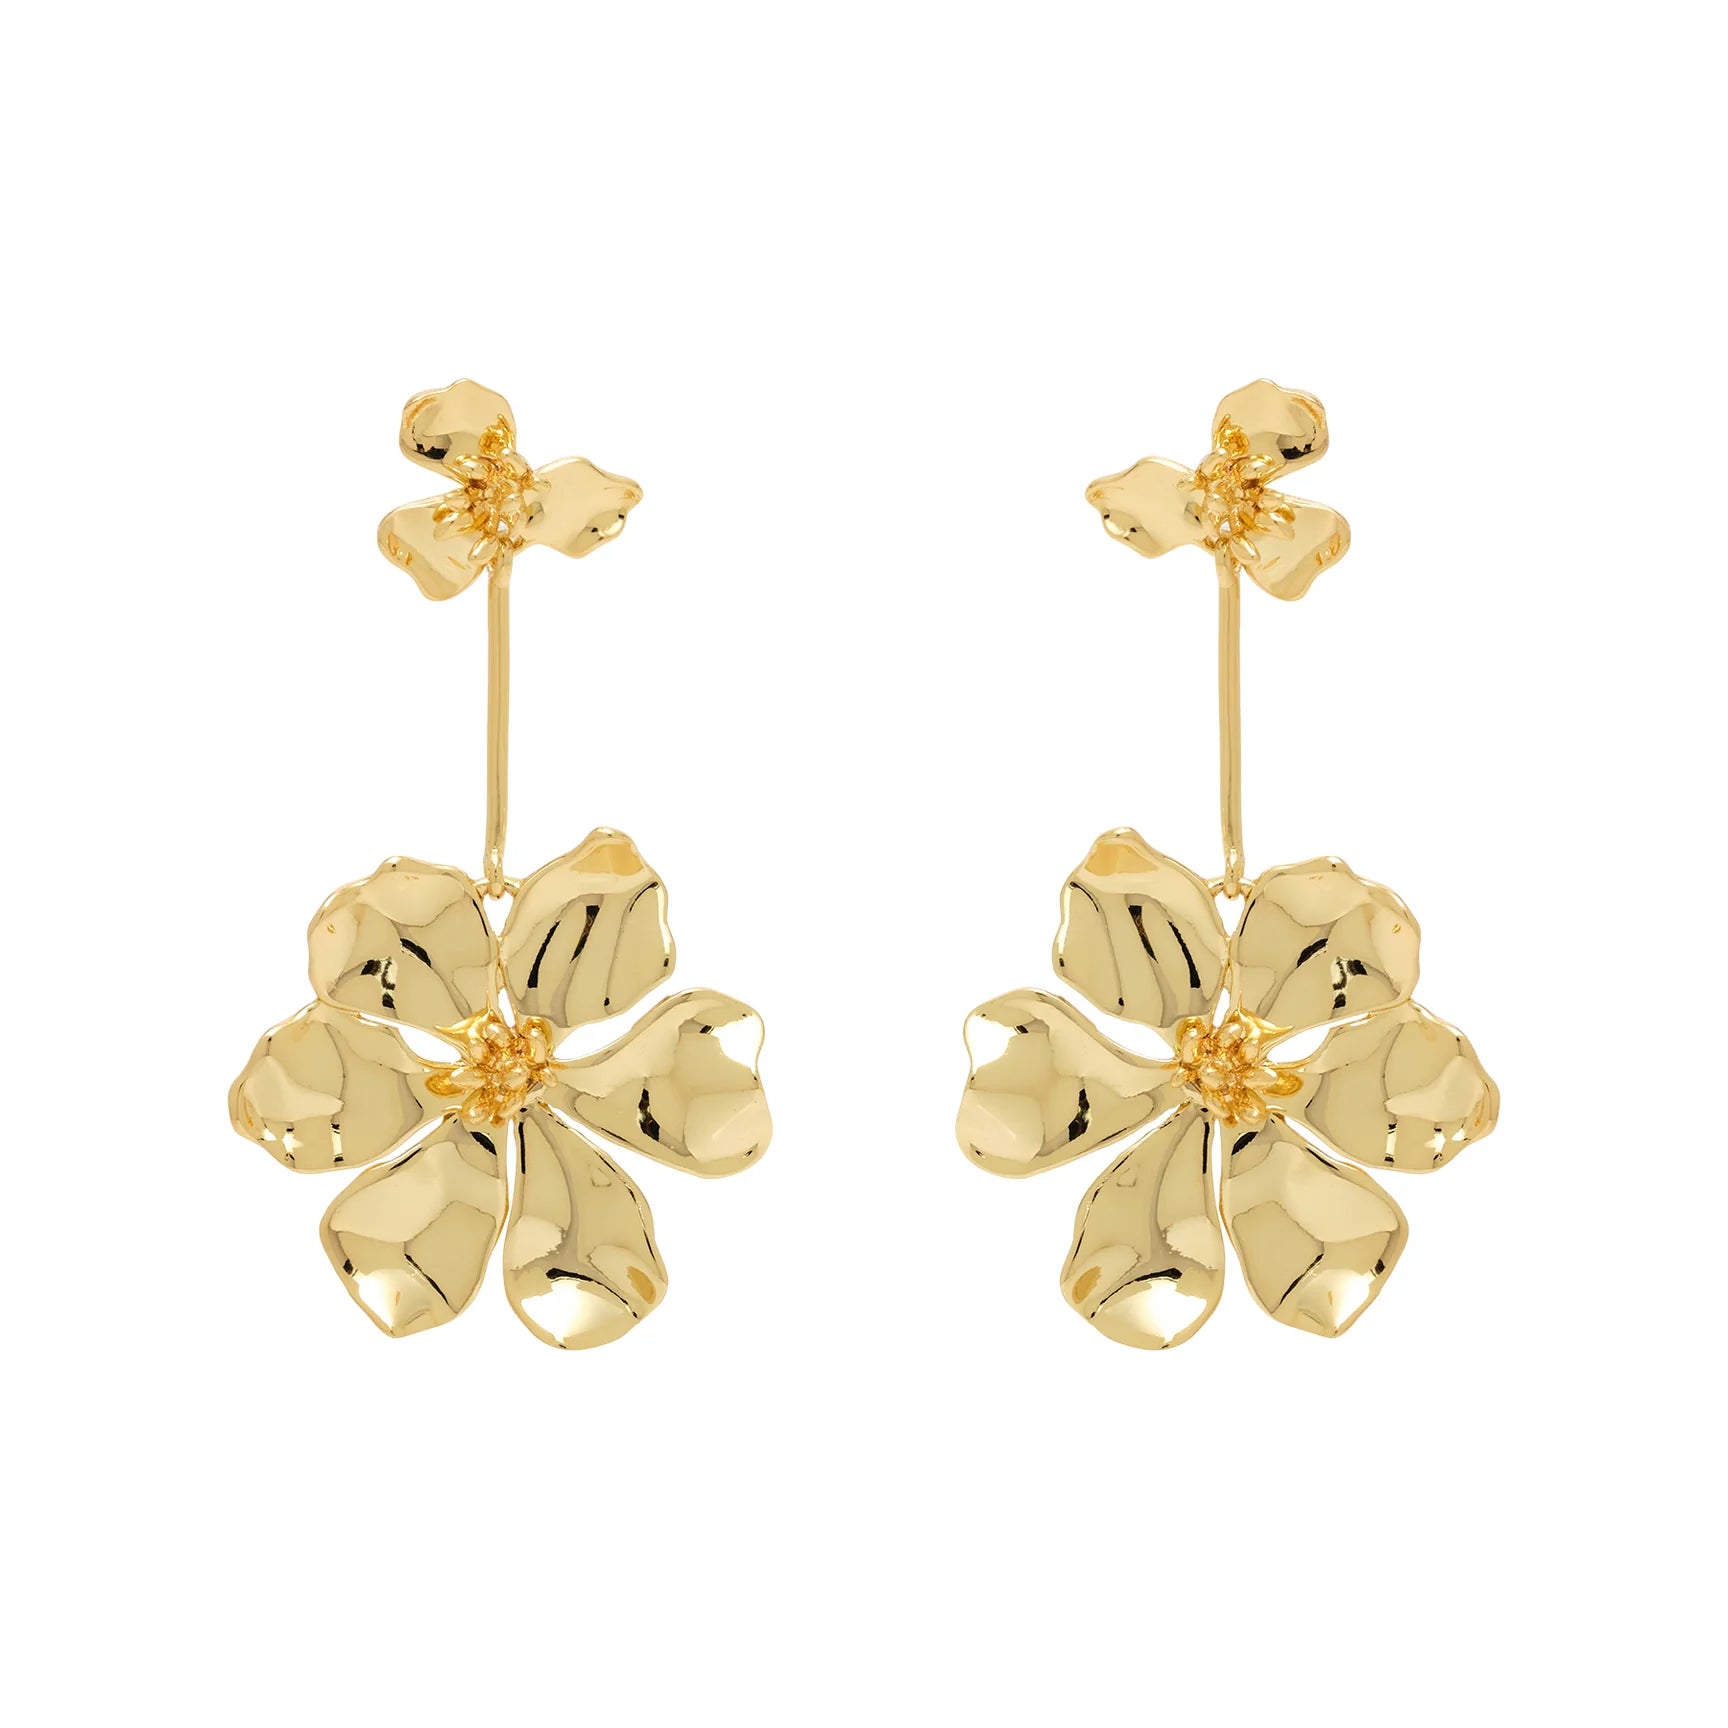 Mignonne Gavigan Lux Elodie Earrings - Gold